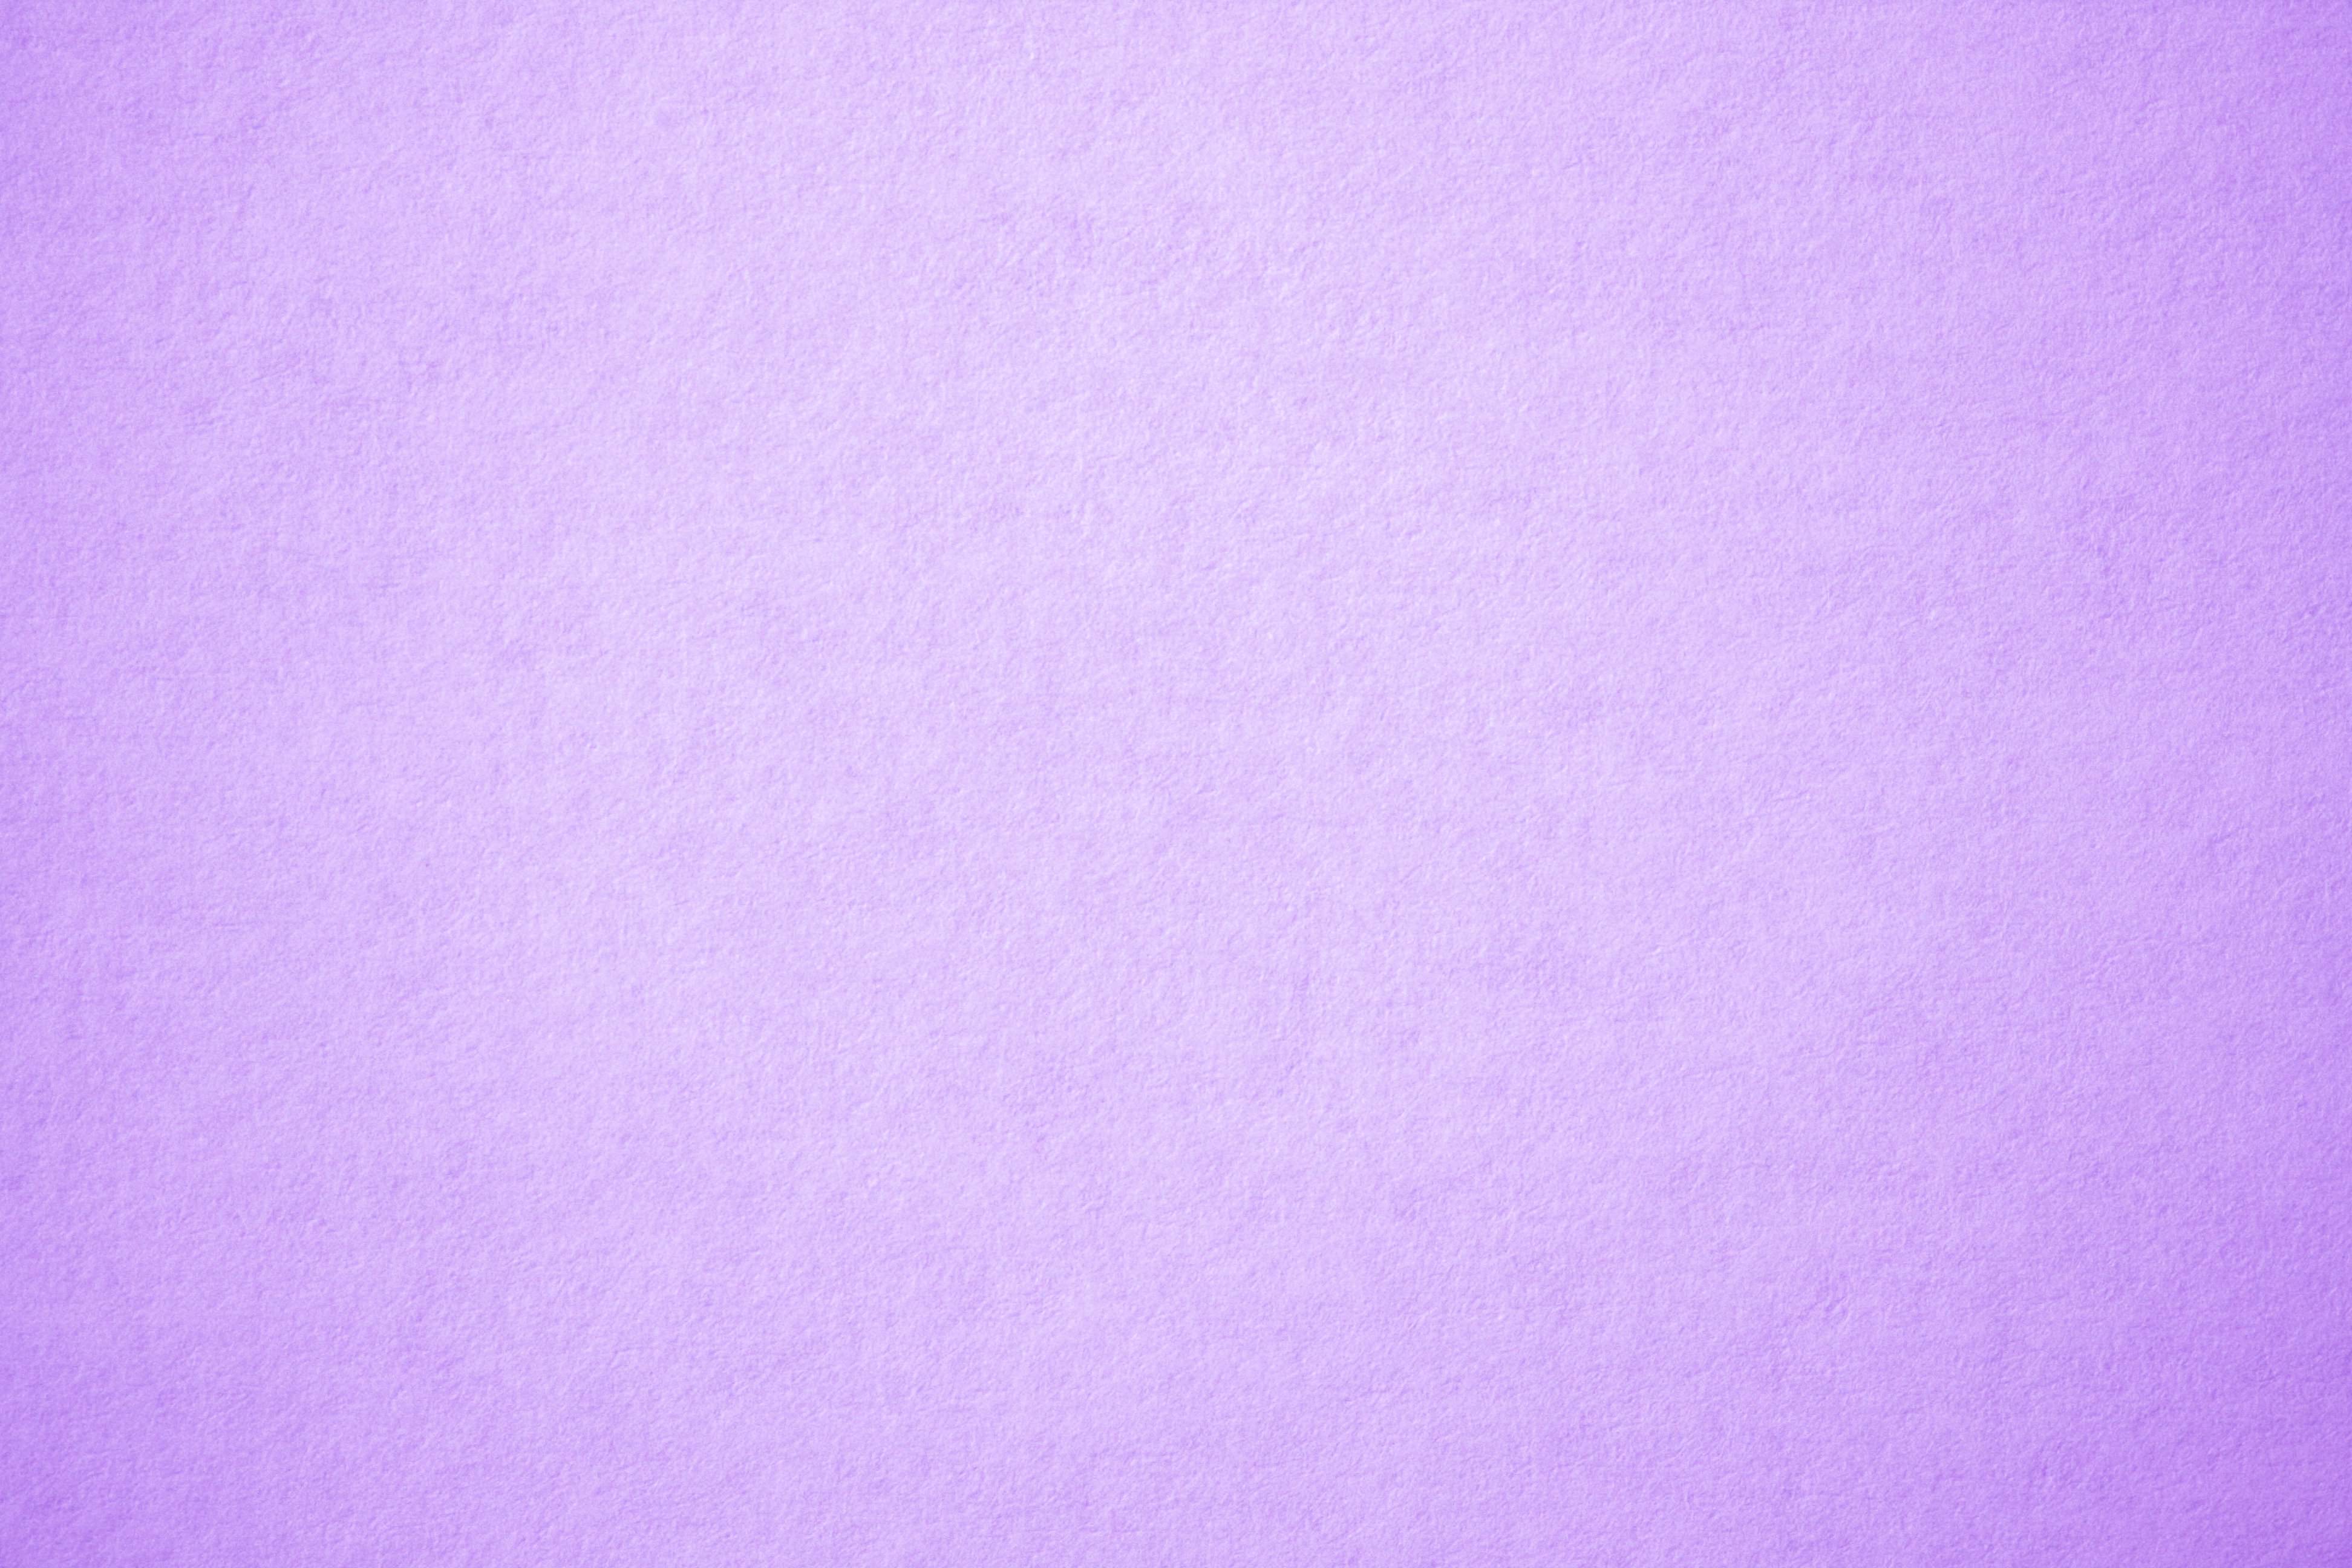 20 Free Simple Plain Backgrounds - Violet Pastel Color Background -  3888x2592 Wallpaper 